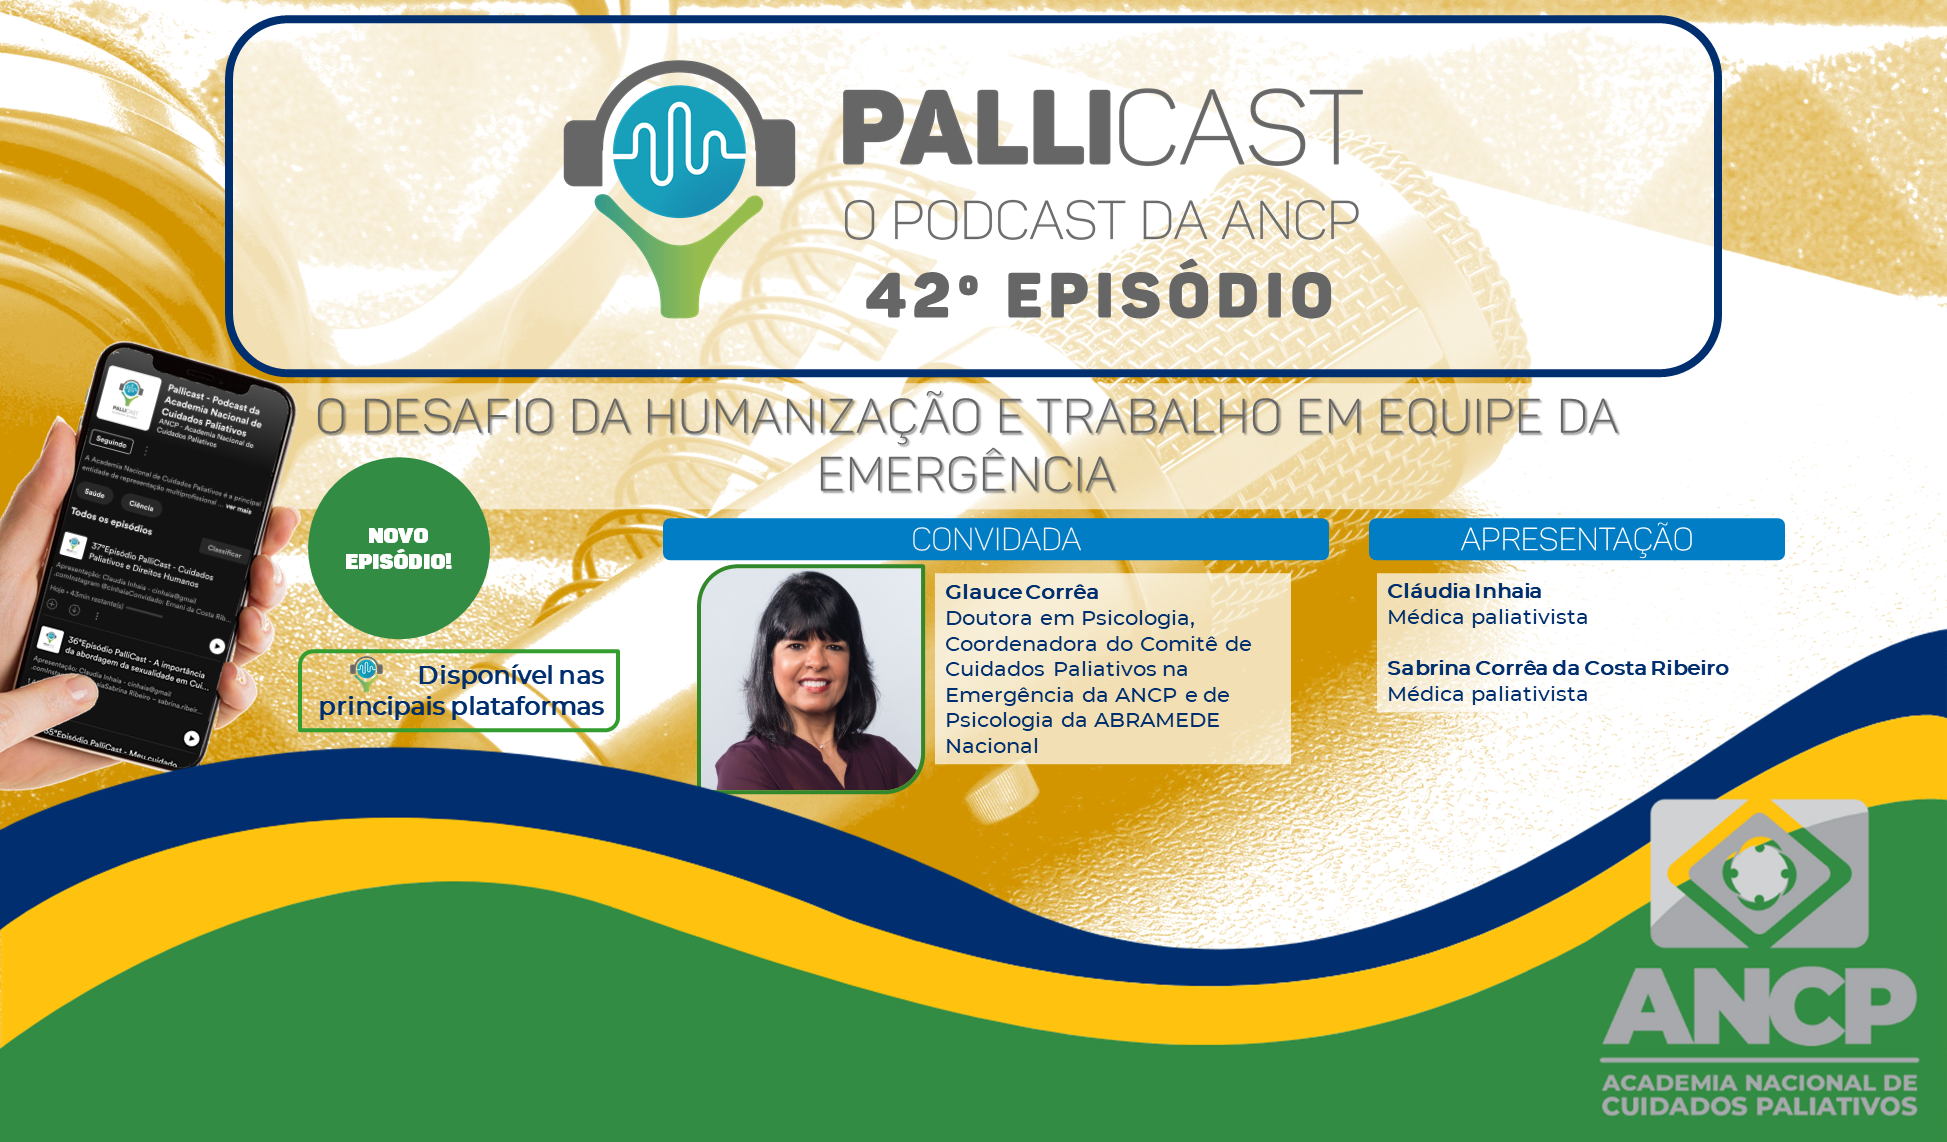 42º EPISÓDIO PALLICAST – O desafio da humanização e trabalho em equipe da emergência